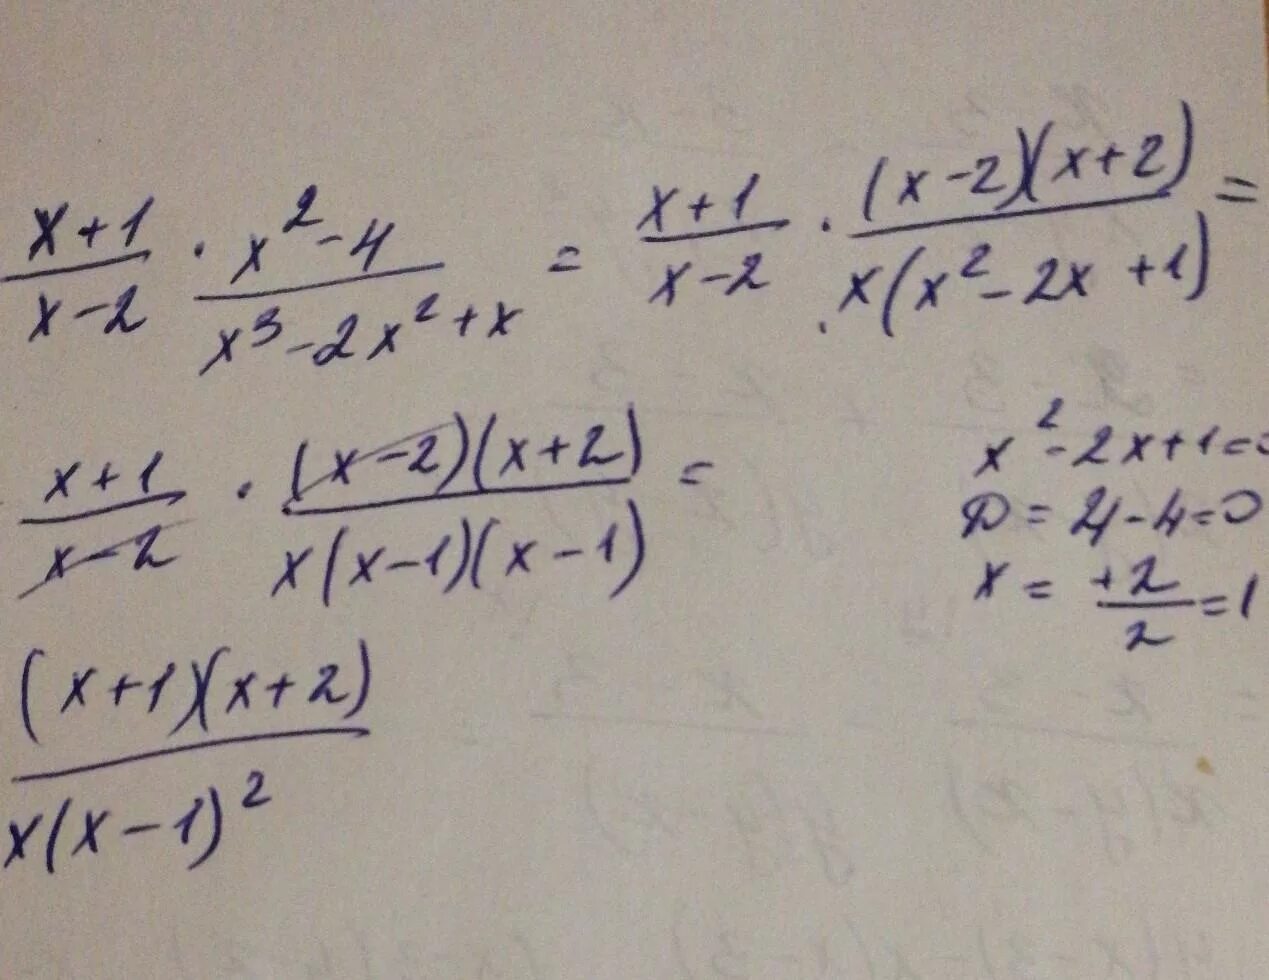 Упростите 3x x2 x 3. Упростите выражение (x-1) (x 2+1) +(3-x) (9+3x+x 2). Упростите выражение x2/x2-1 x/x+1. X*(X^2+X)+(-X^2-X-1) упростите. Упростить (x+1)(x+2).